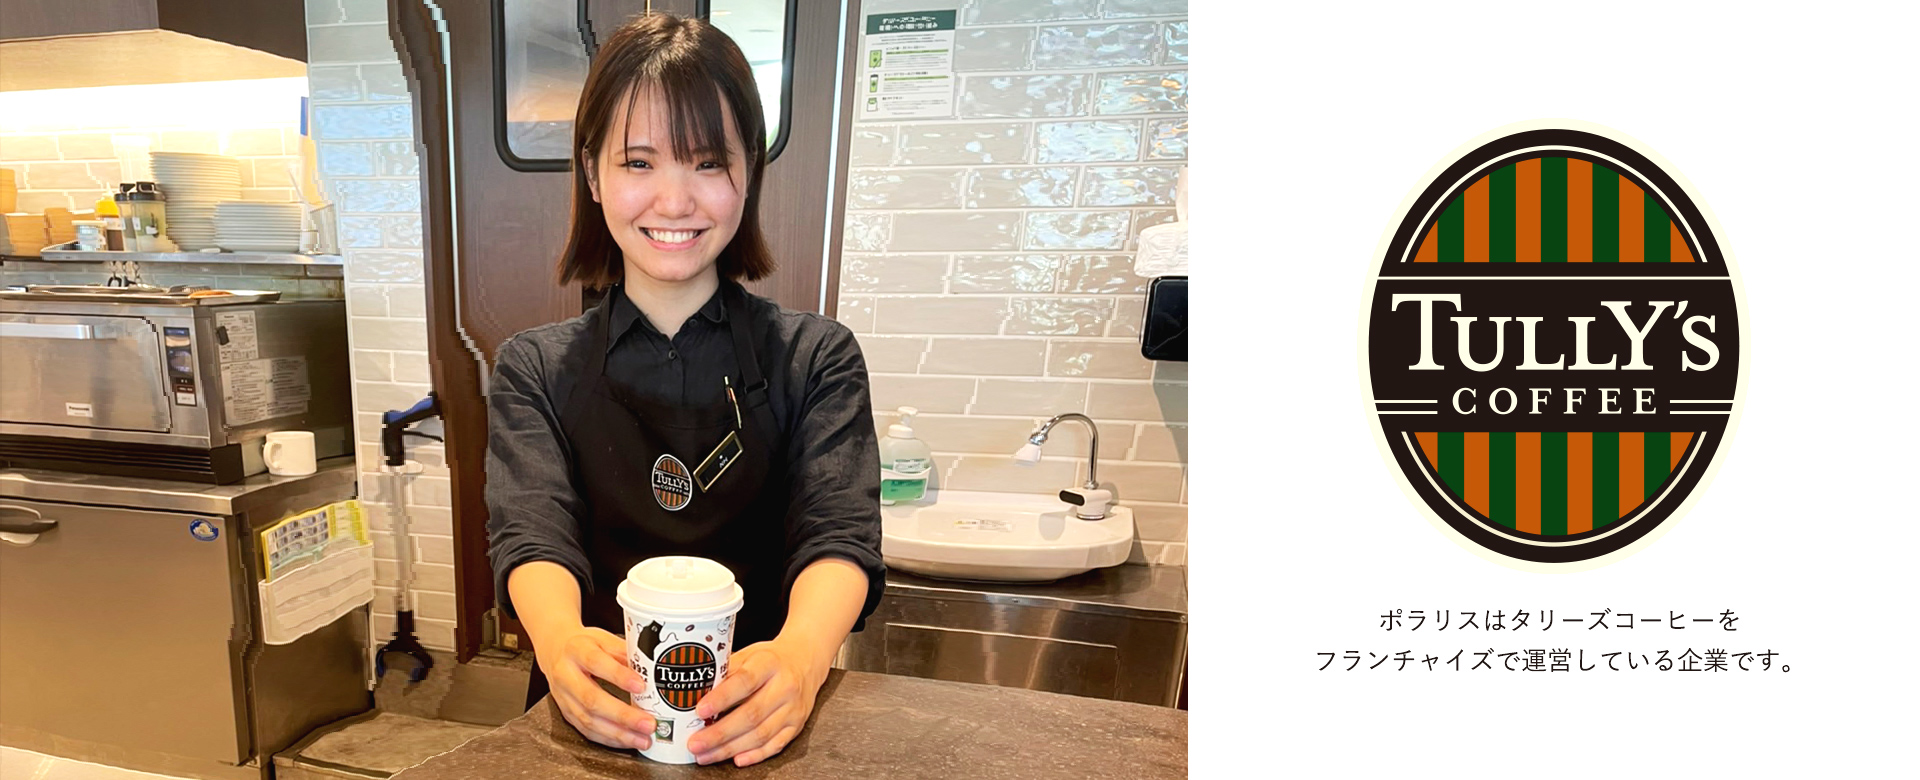 株式会社ポラリスはタリーズコーヒージャパン株式会社とフランチャイズ契約を締結し、現在首都圏を中心に８店舗のタリーズコーヒーの店舗運営を行っています。